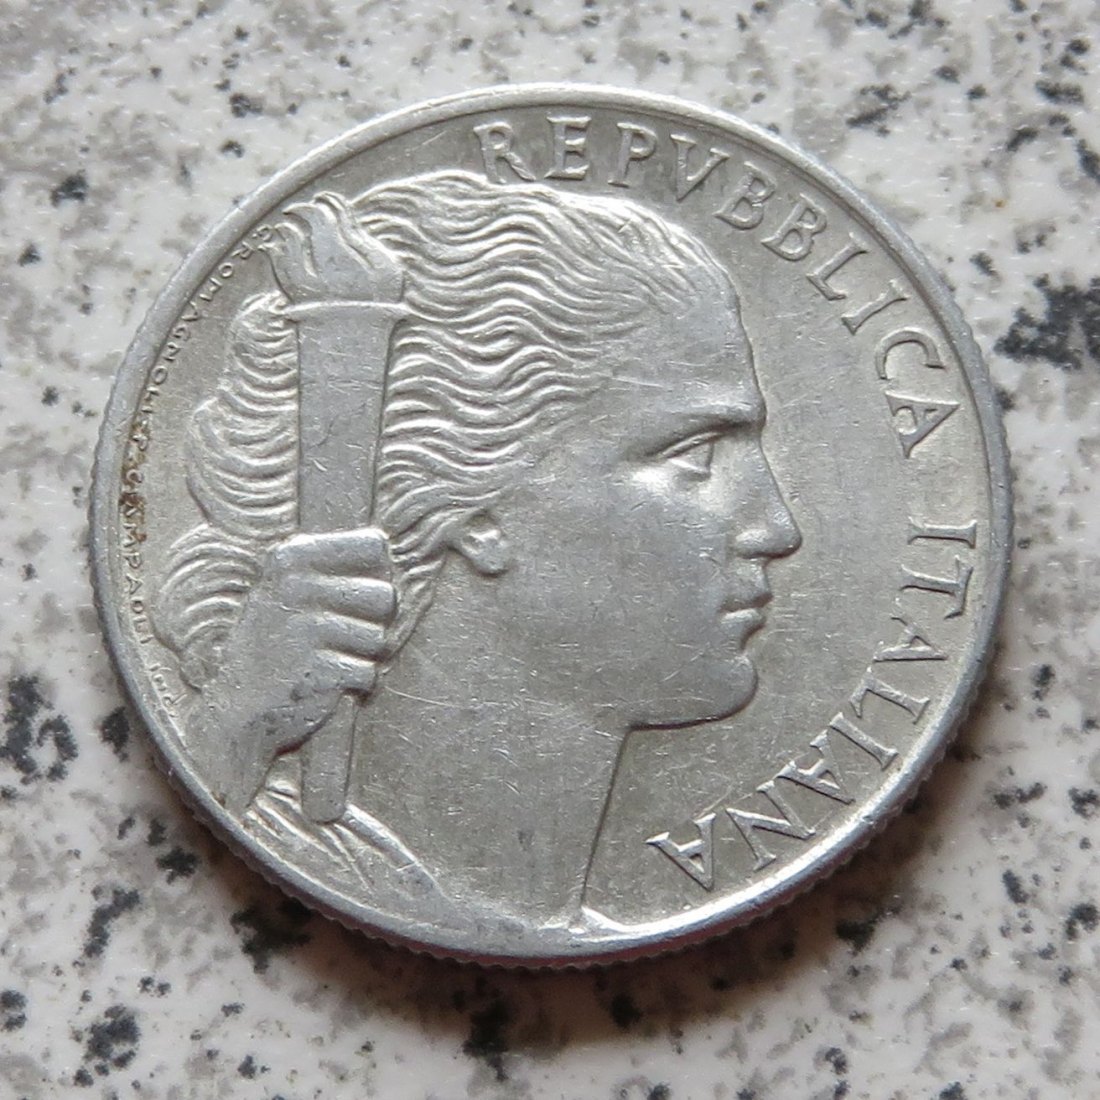  Italien 5 Lire 1948 R   